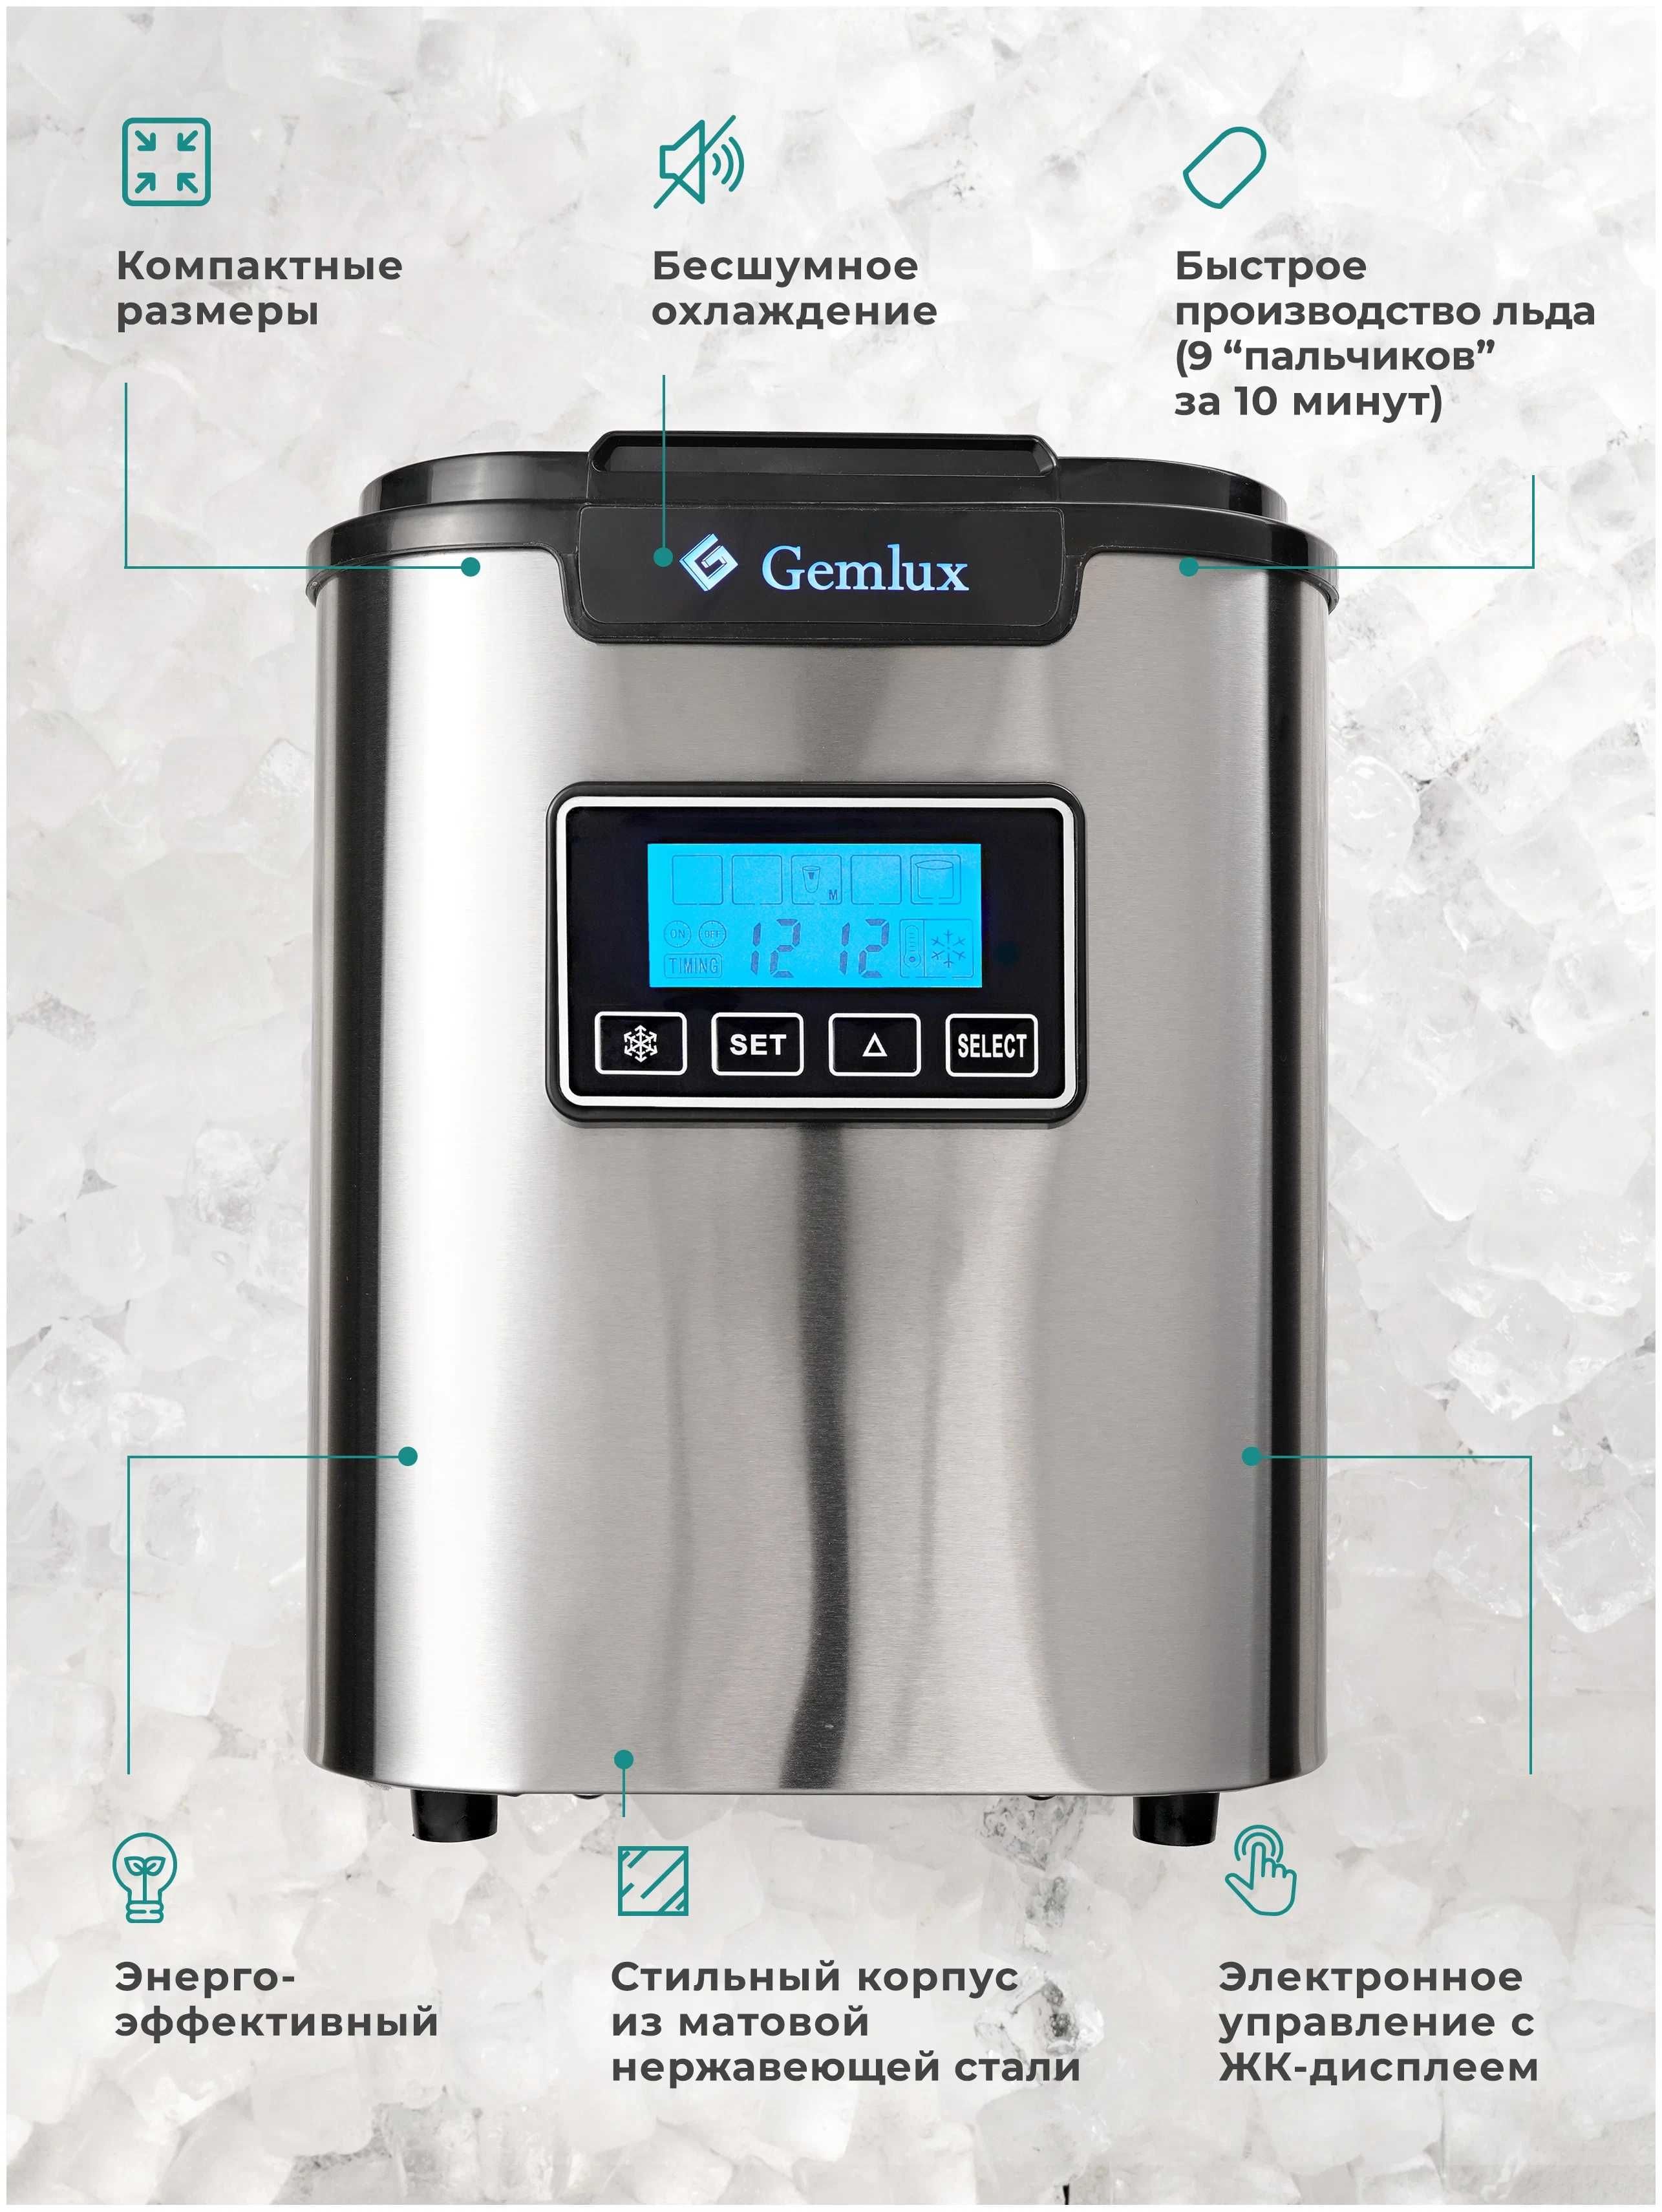 Автомобильный льдогенератор Gemlux 088 новый в упаковке с доставкой